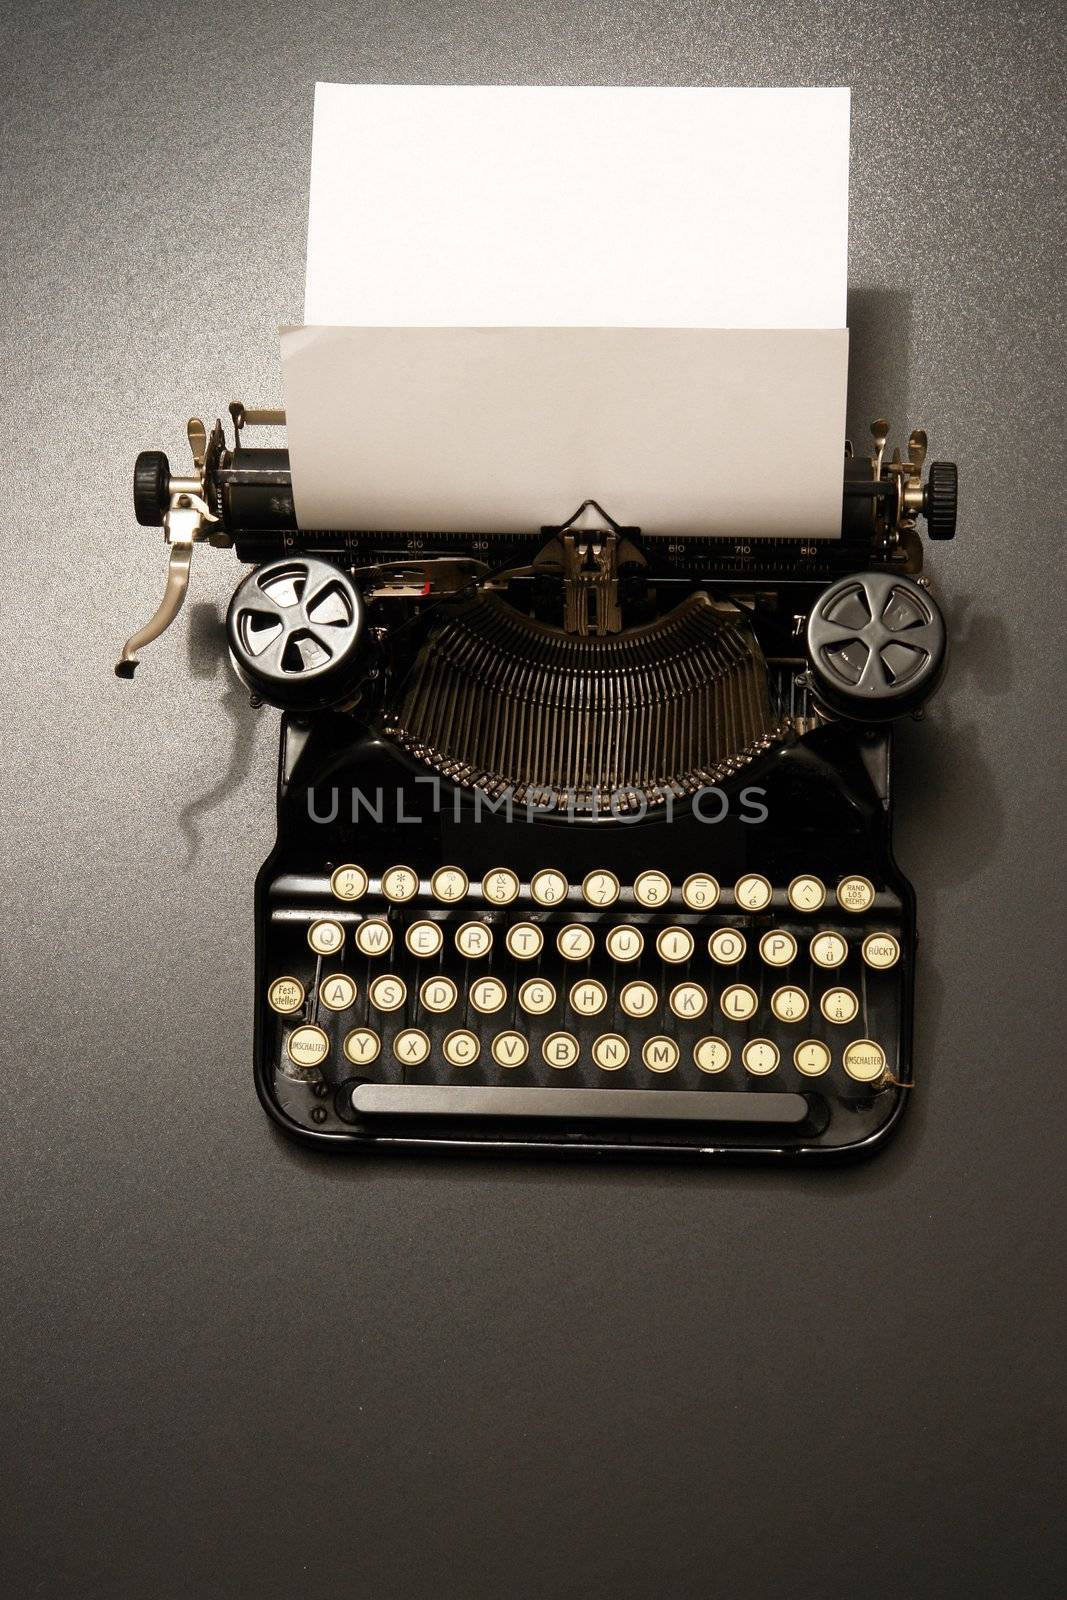 a typewriter in dramatic lighting.